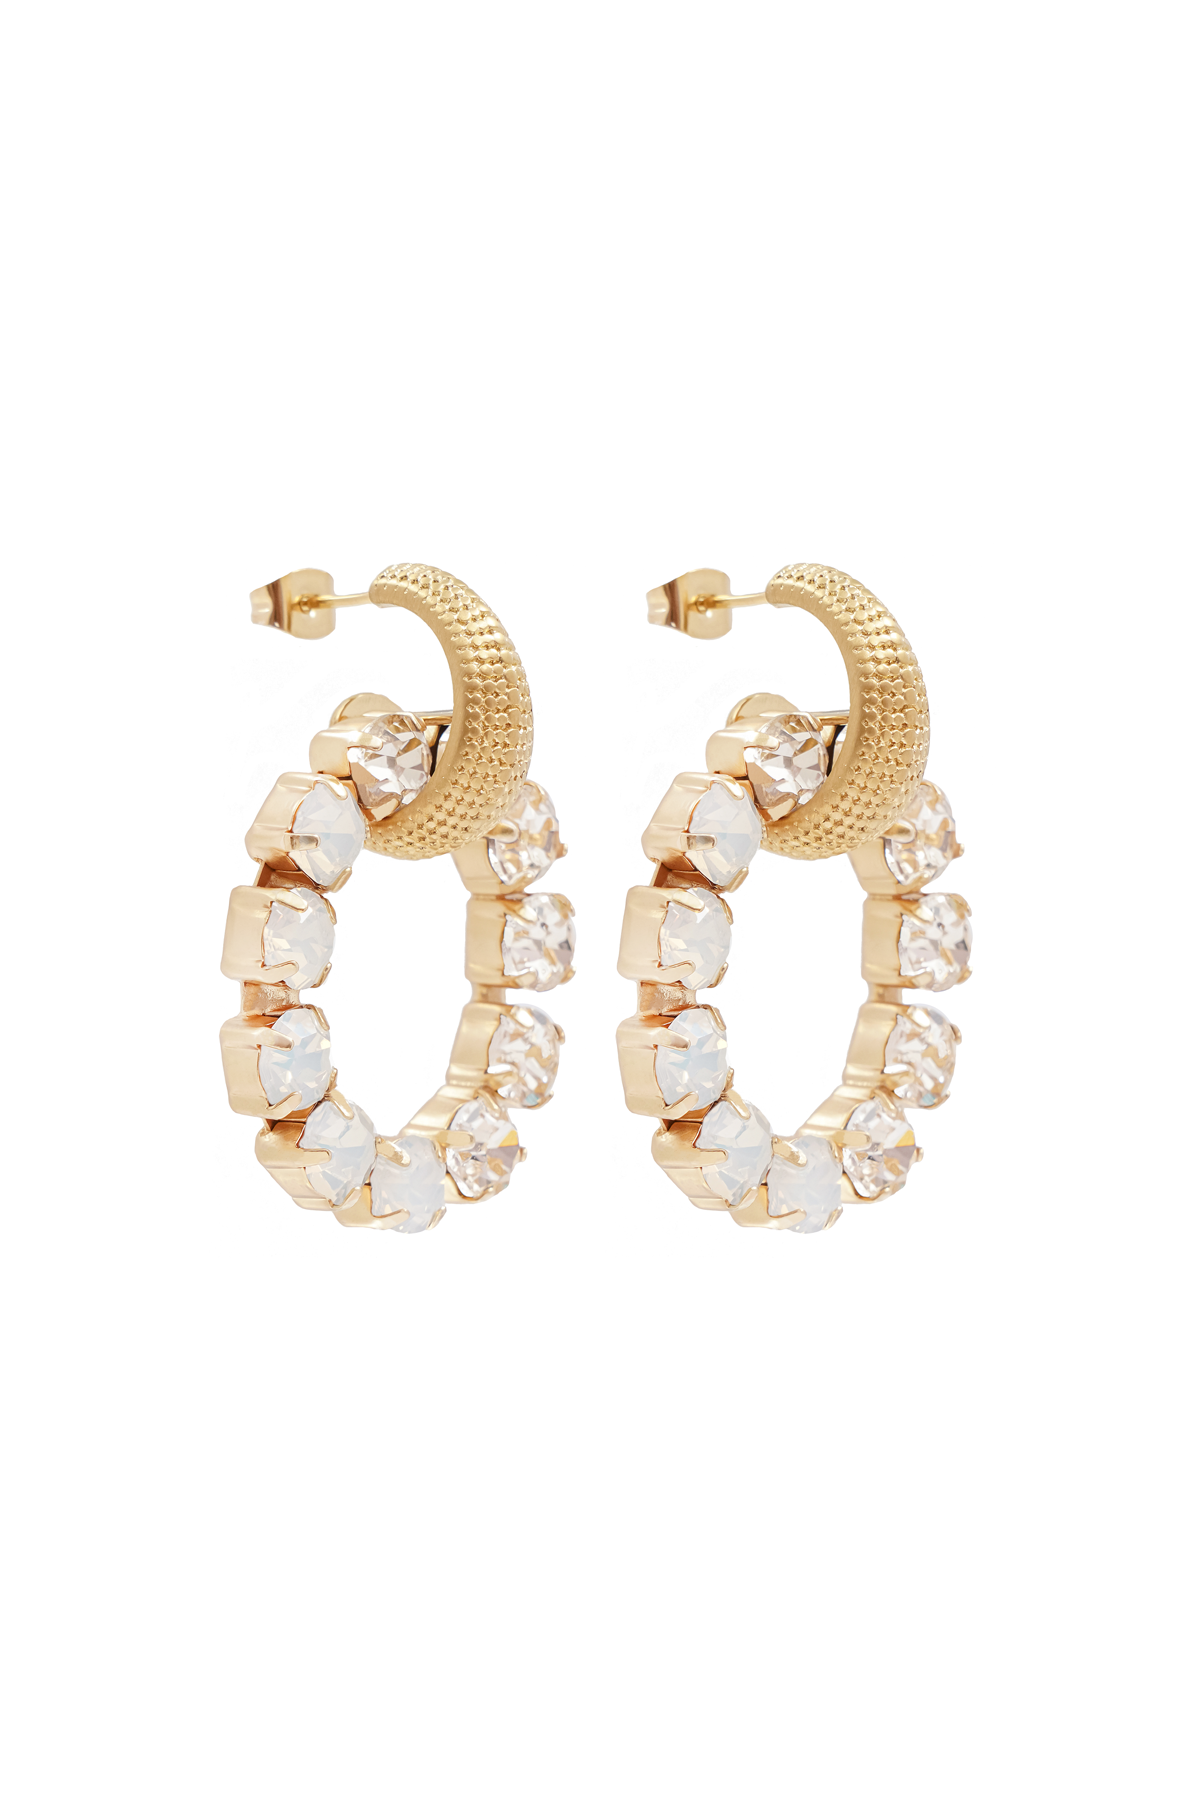 Carolina Swarovski earrings - White opal/Golden